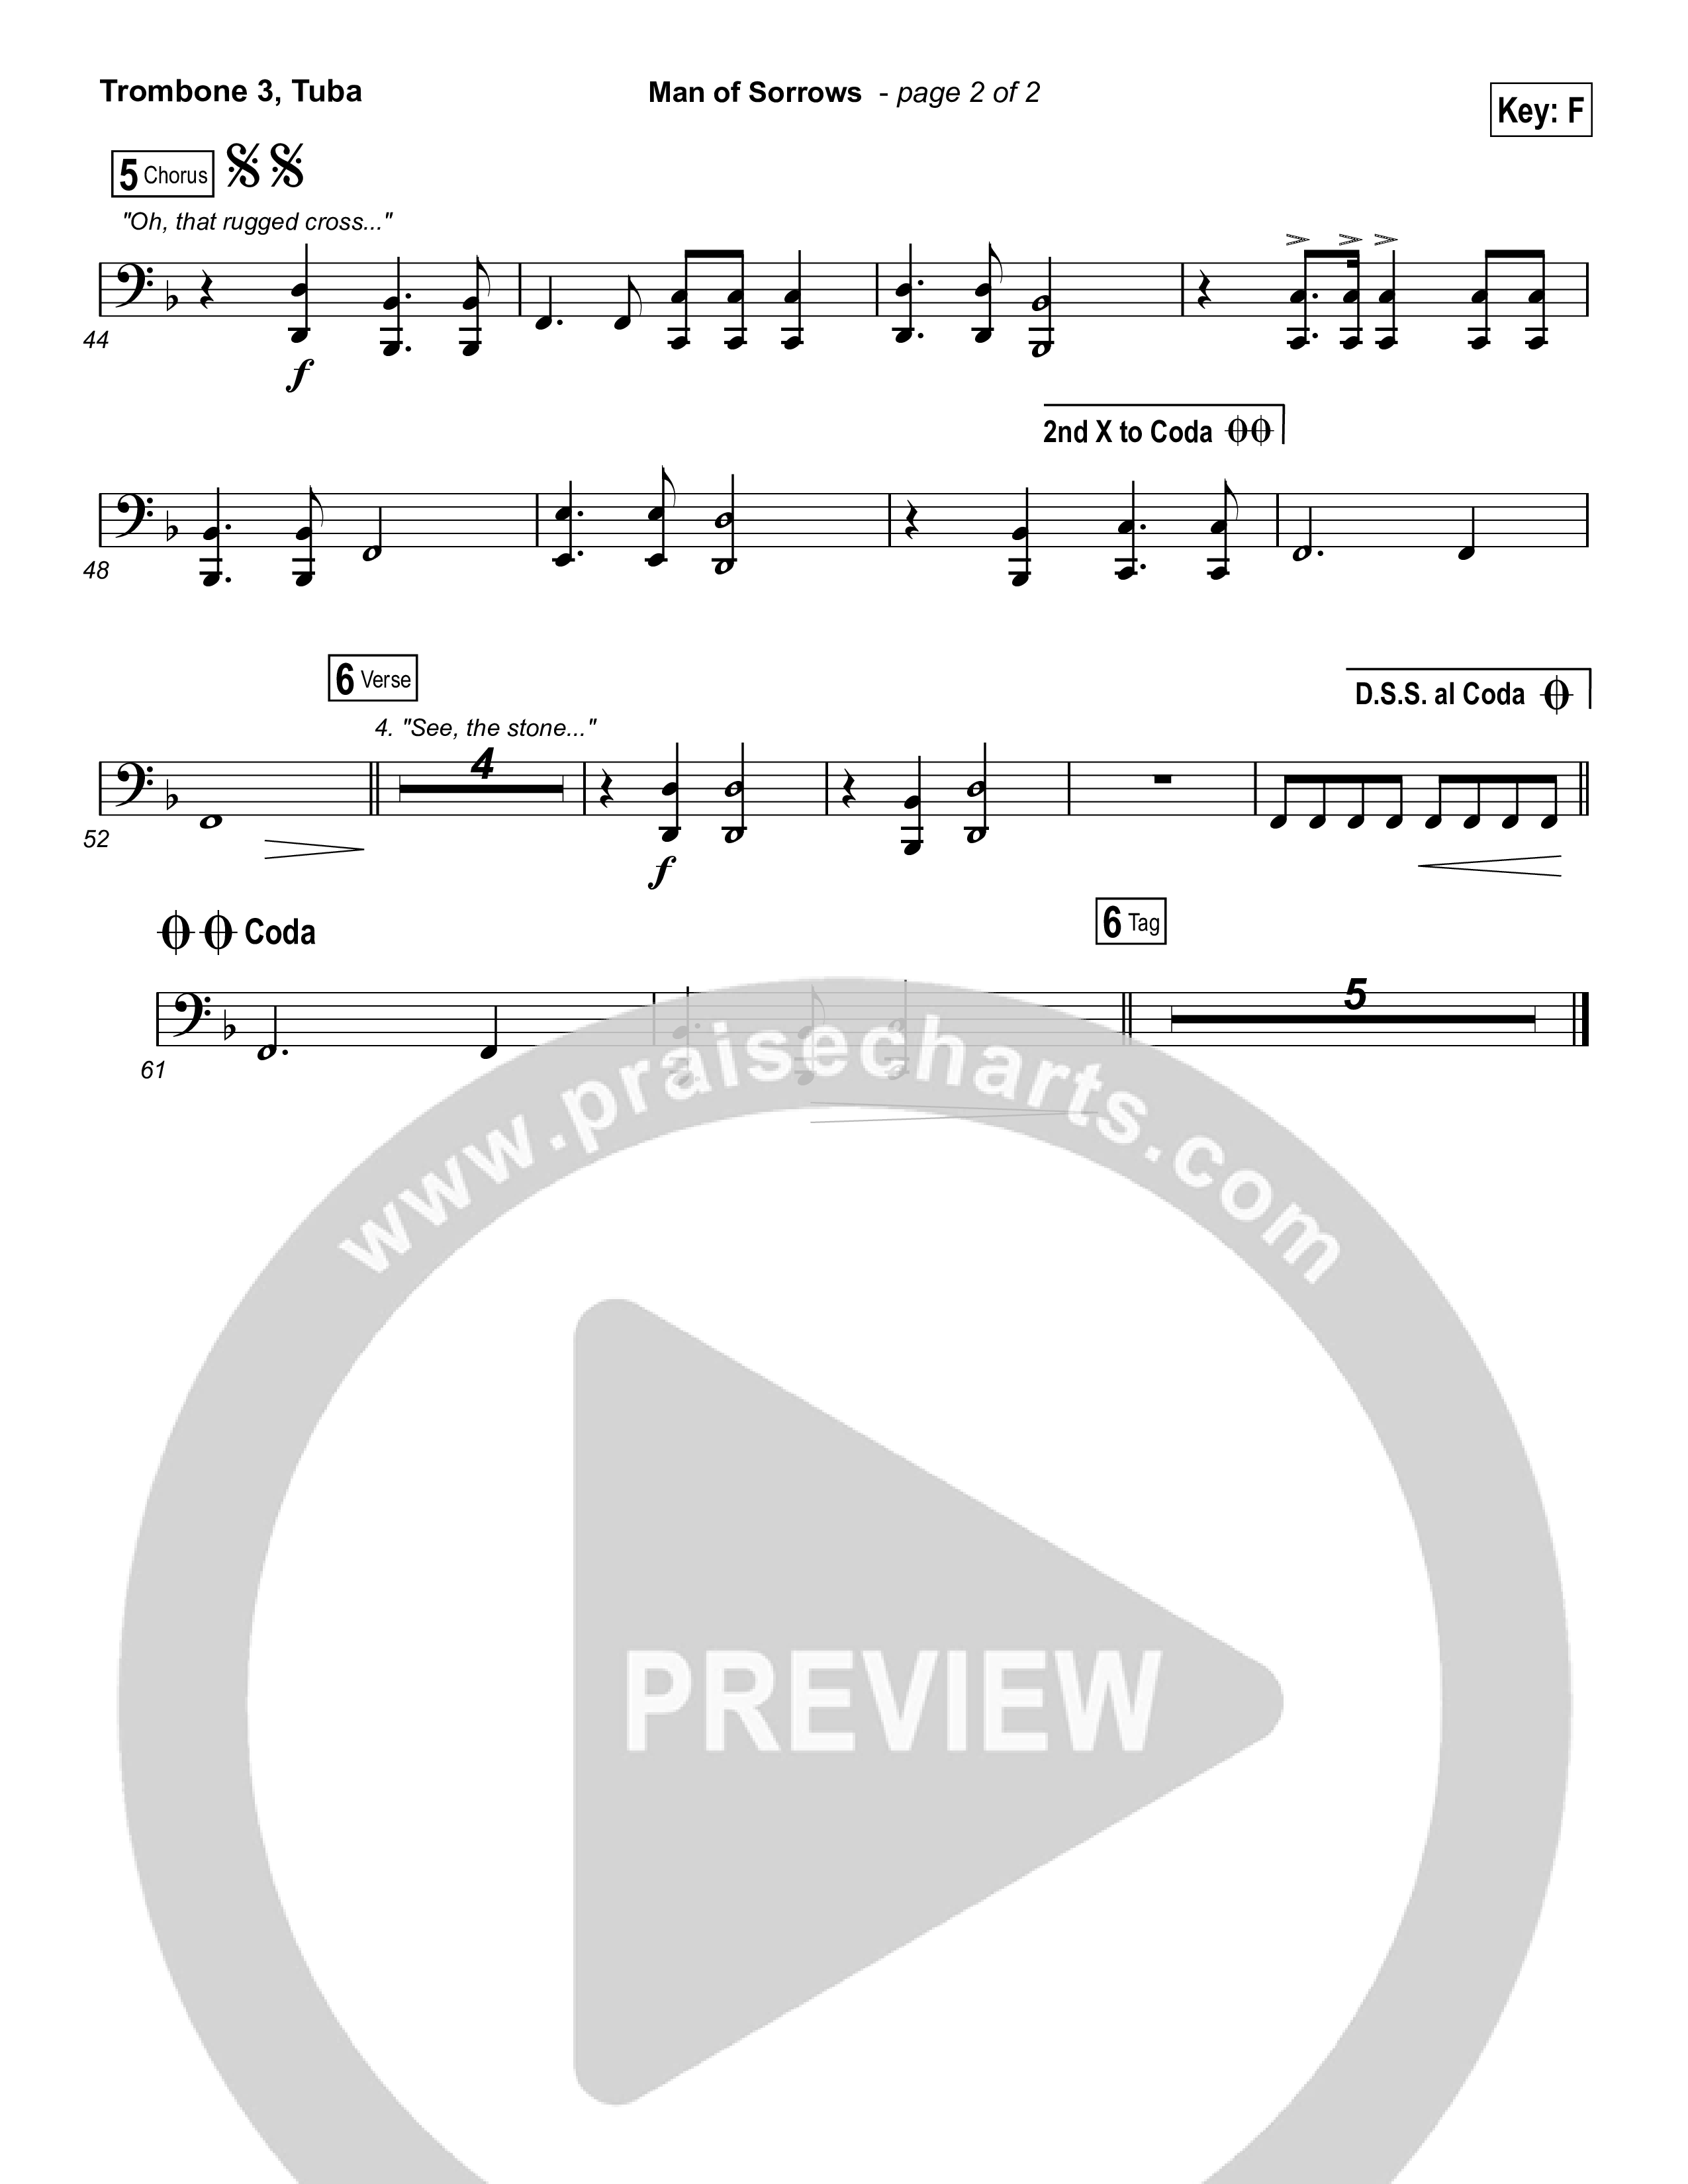 Man Of Sorrows (Choral Anthem SATB) Trombone 3/Tuba (Hillsong Worship / Arr. Erik Foster)